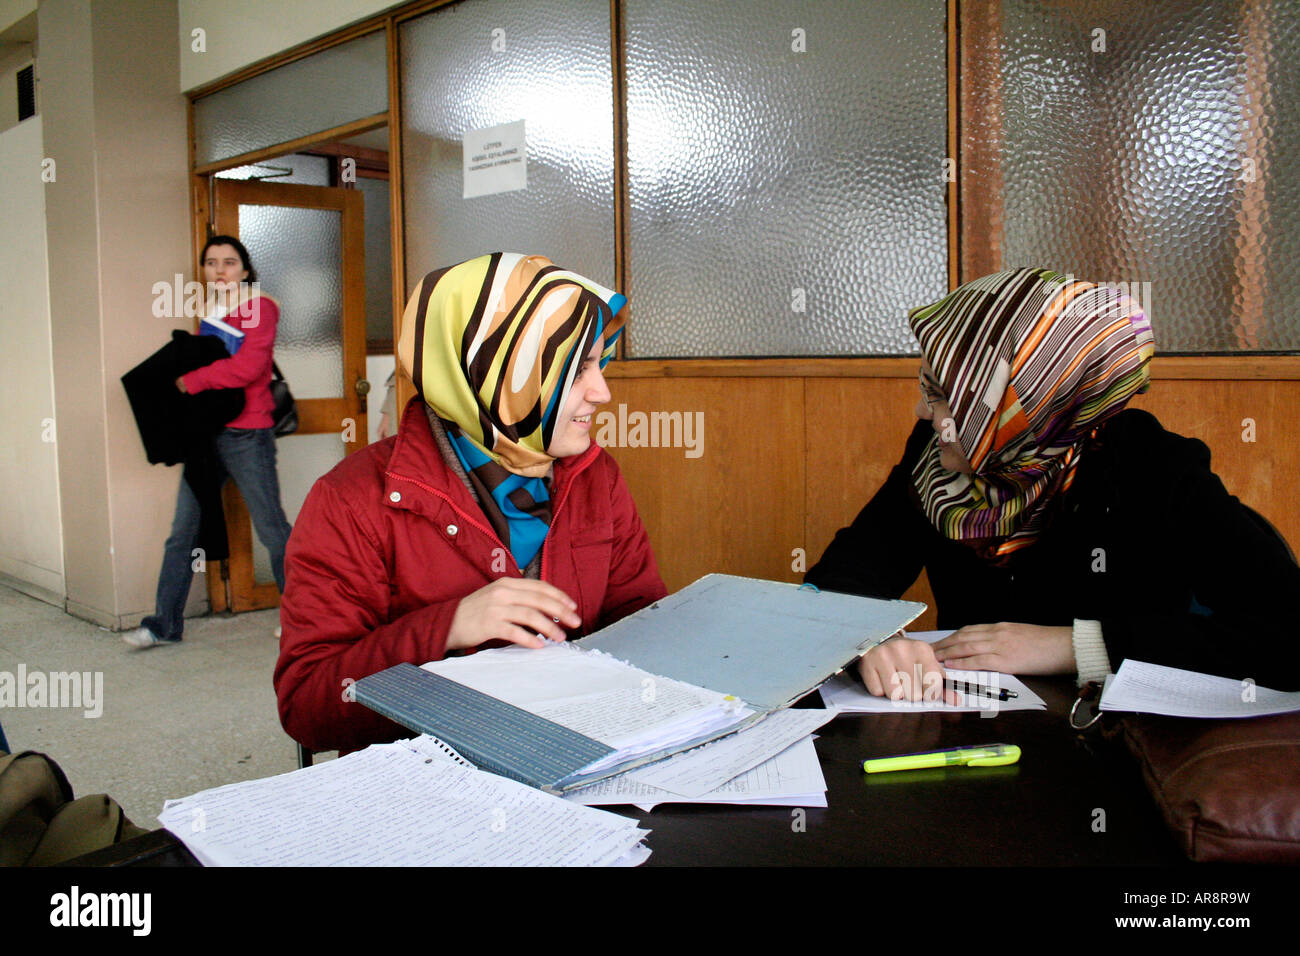 Headscarved des étudiants à l'université université Sabanci, Istanbul Turquie Banque D'Images